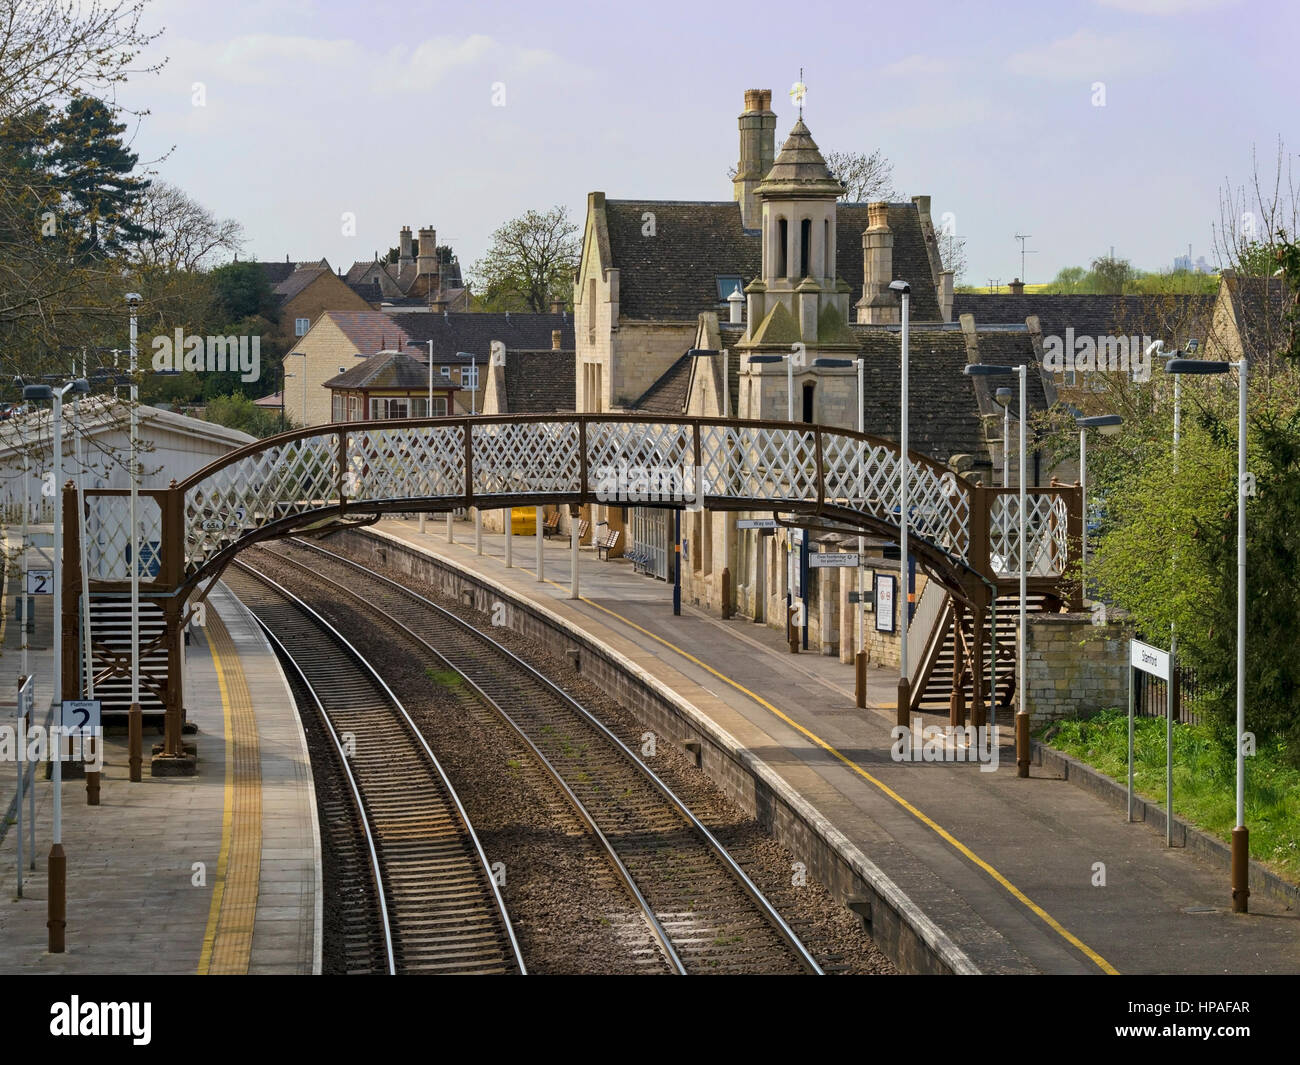 Binari ferroviari, passerelle pedonali e piattaforme di stazioni deserte, stazione ferroviaria di Stamford, Stamford, Lincolnshire, Inghilterra, REGNO UNITO Foto Stock